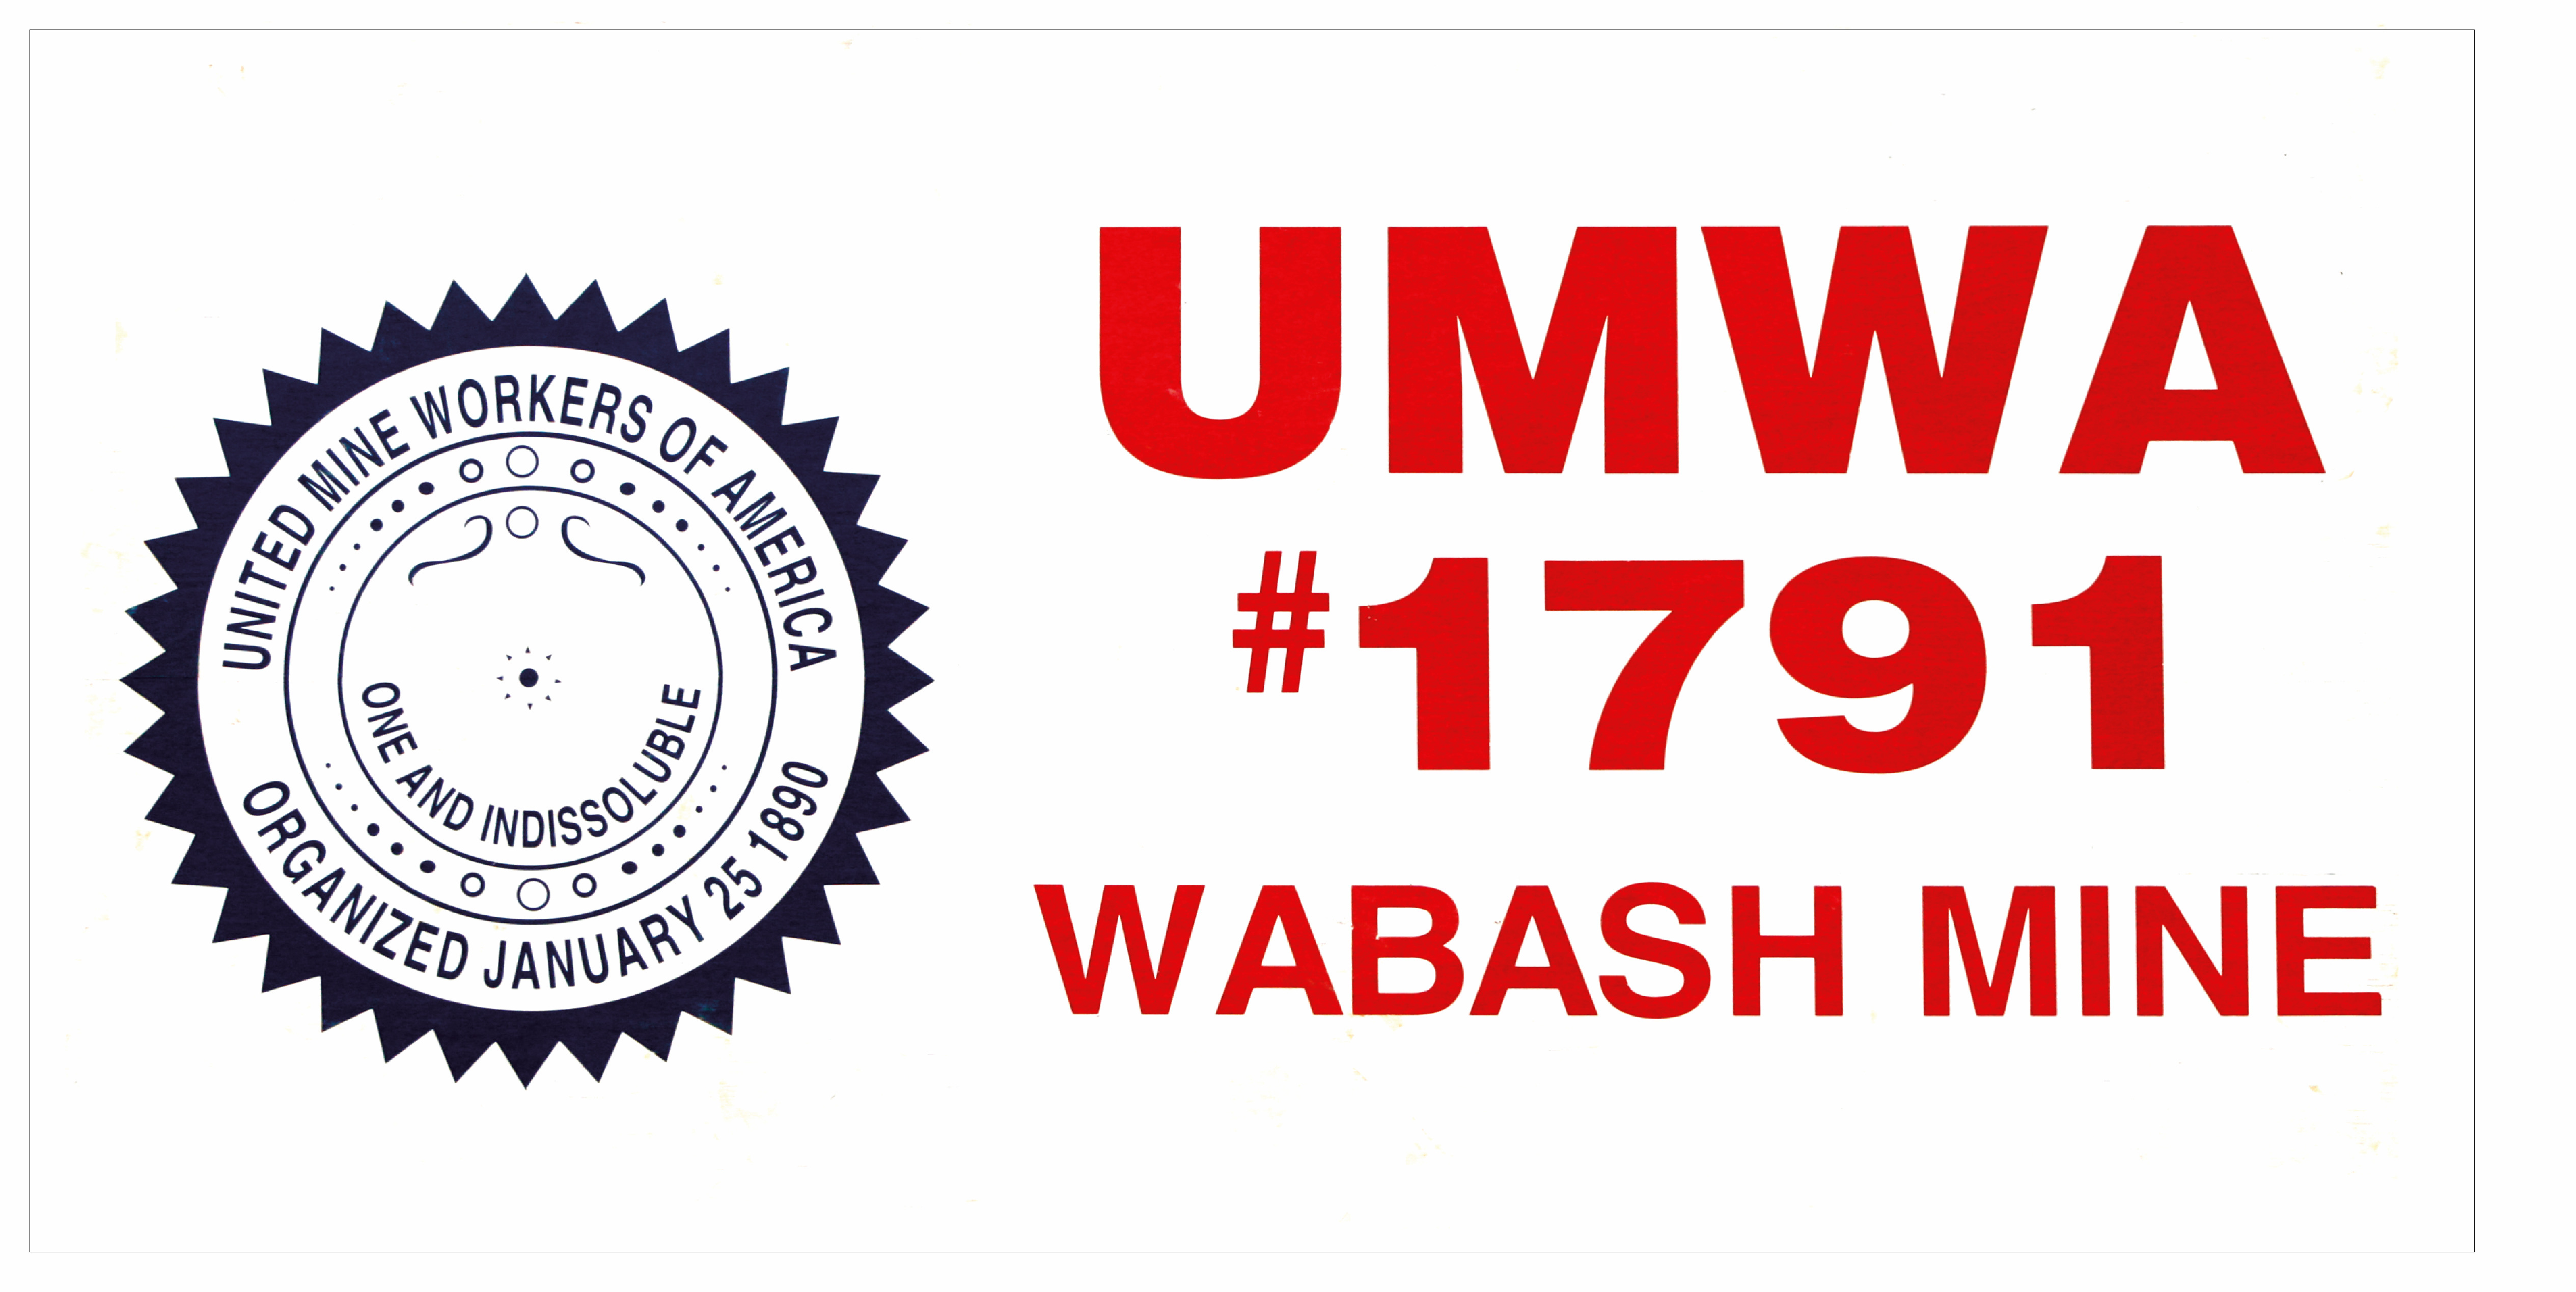 UMWA-1791